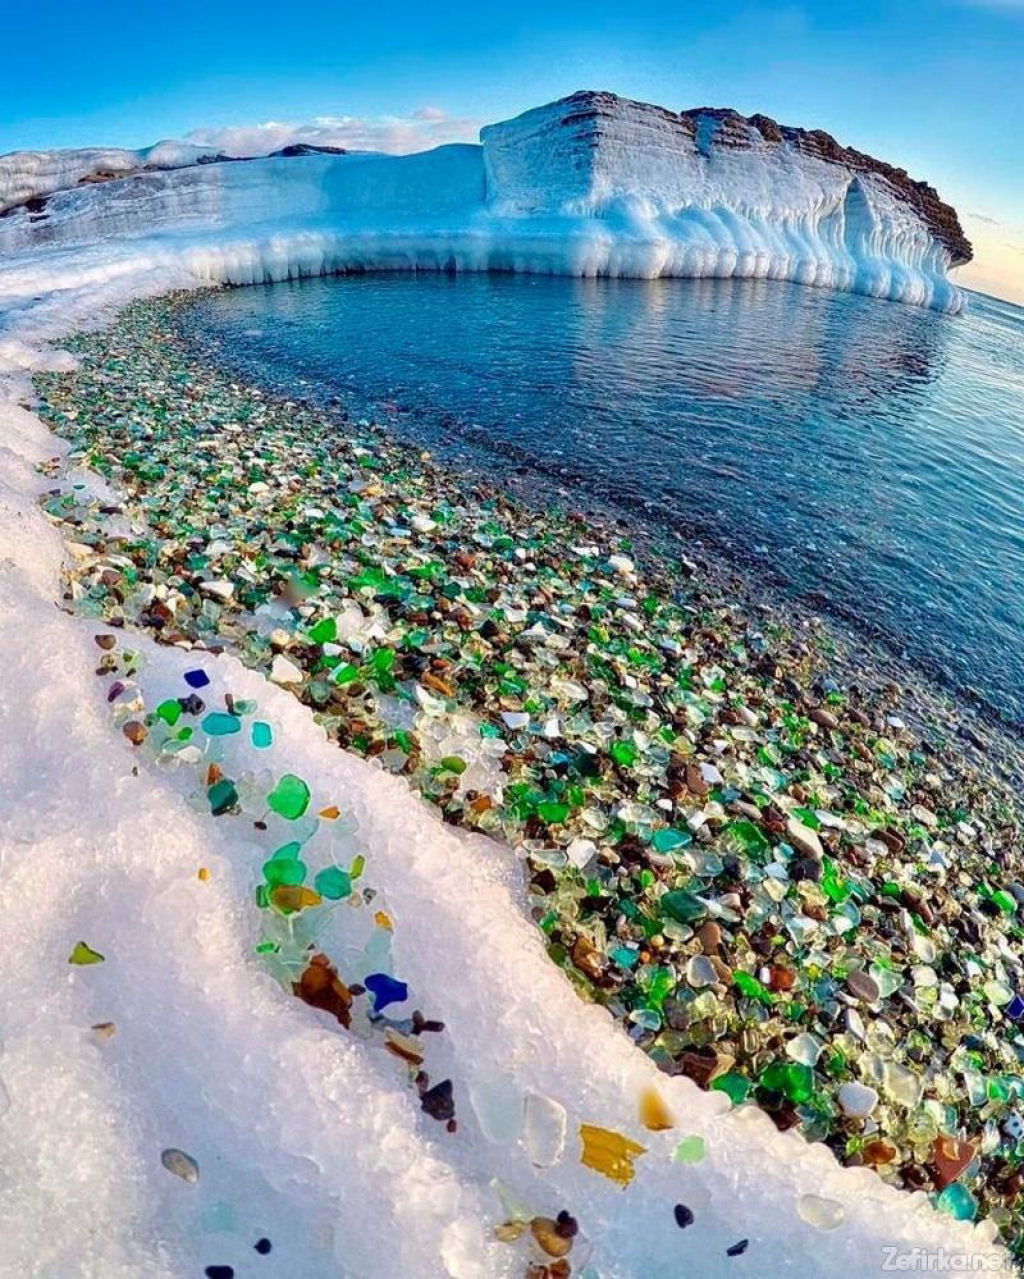 Natureza transforma a poluio humana em uma deslumbrante praia de vidro 07